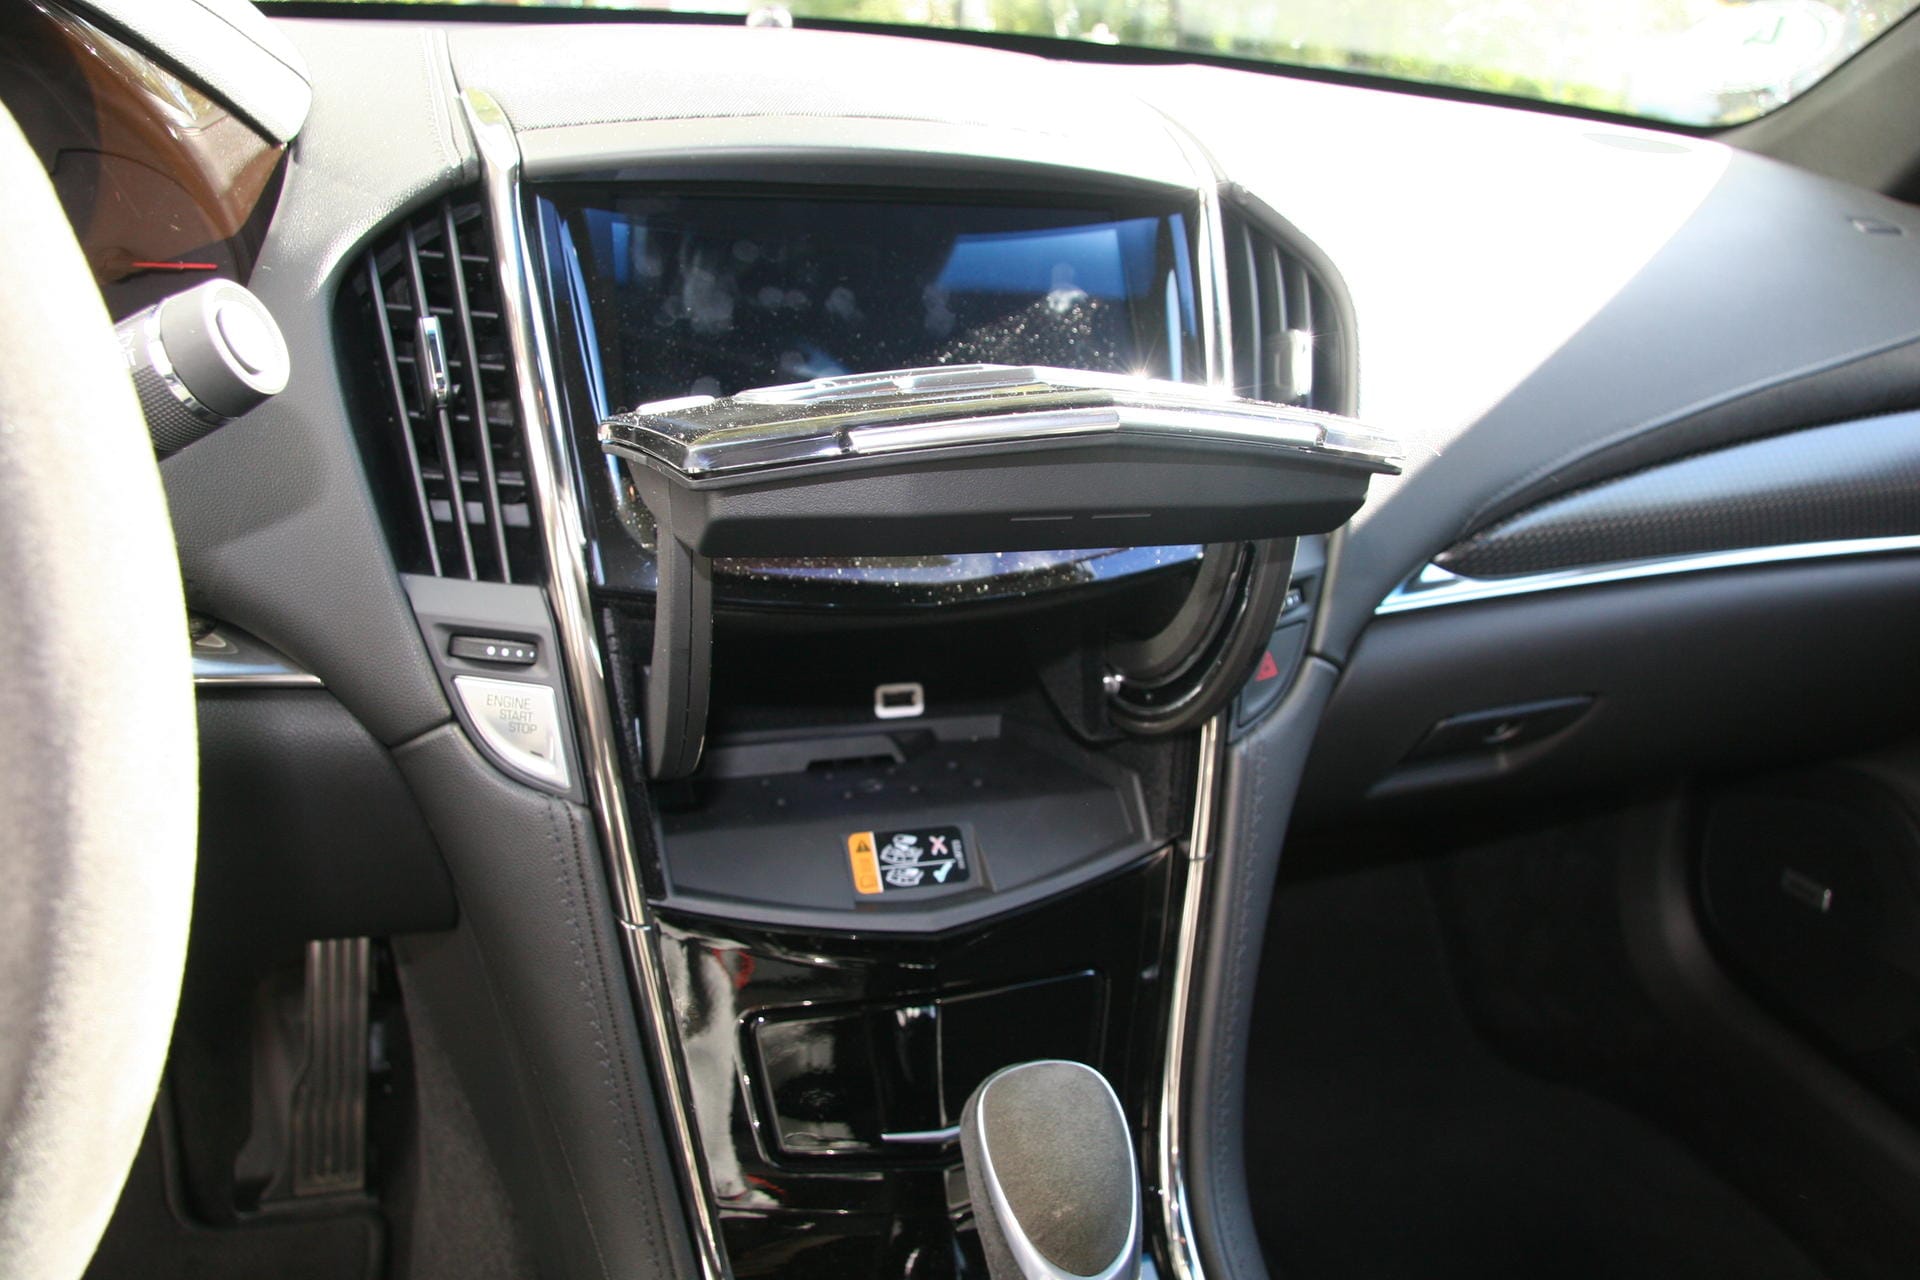 Und wie bei der Corvette versteckt sich unter dem Bildschirm ein Hohlraum mit einem zusätzlichen USB-Port.